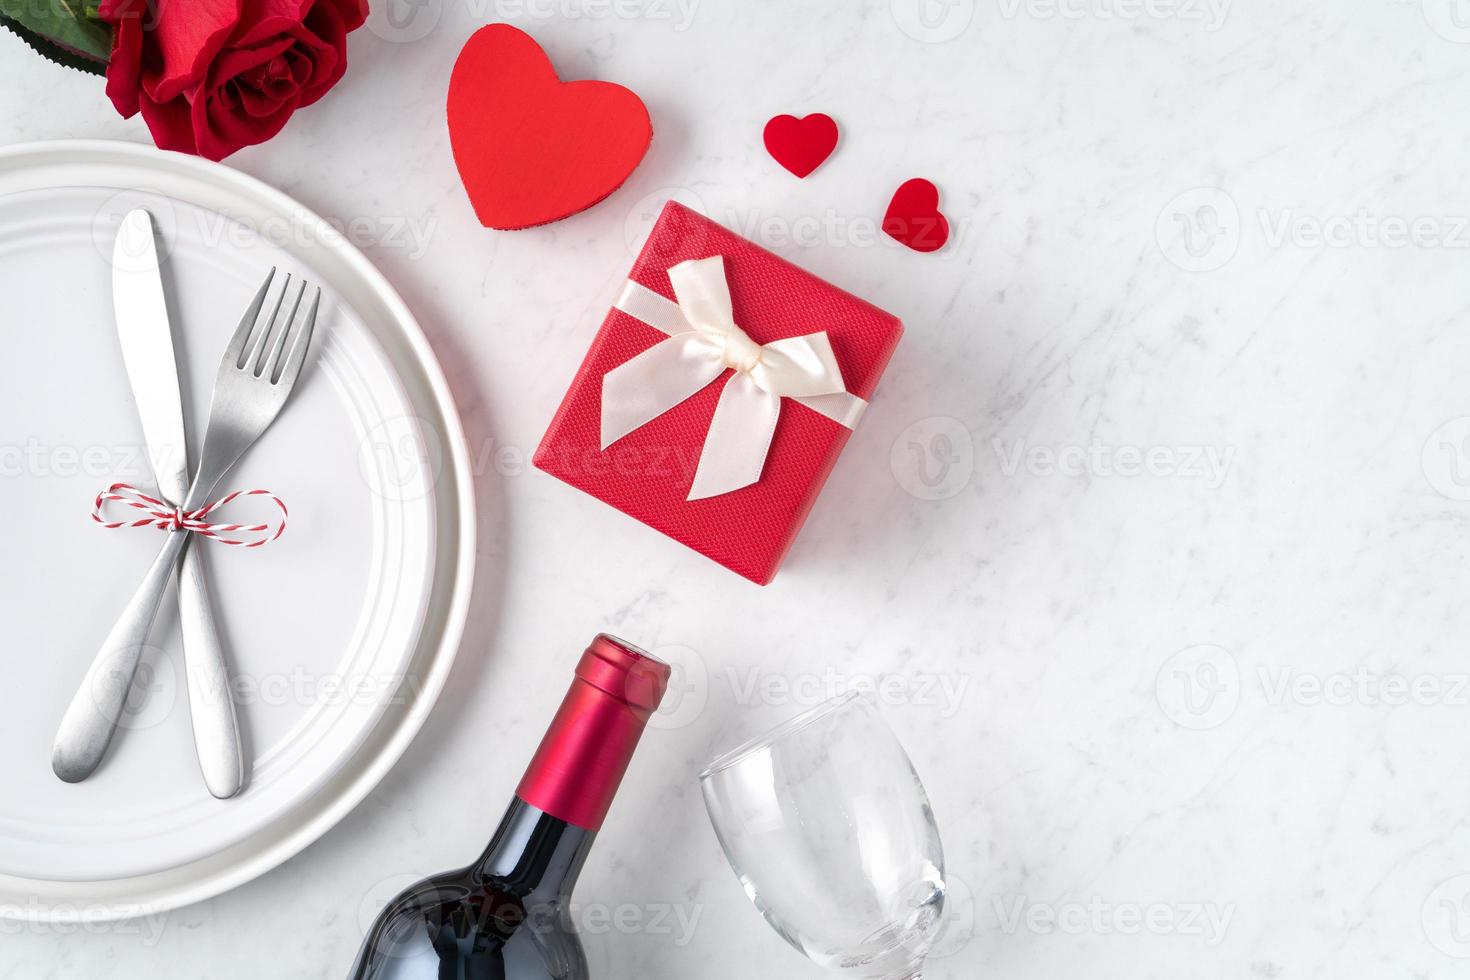 teller mit geschirr, band, geschenk und rosen für das spezielle mahlzeitkonzept des valentinstags. foto